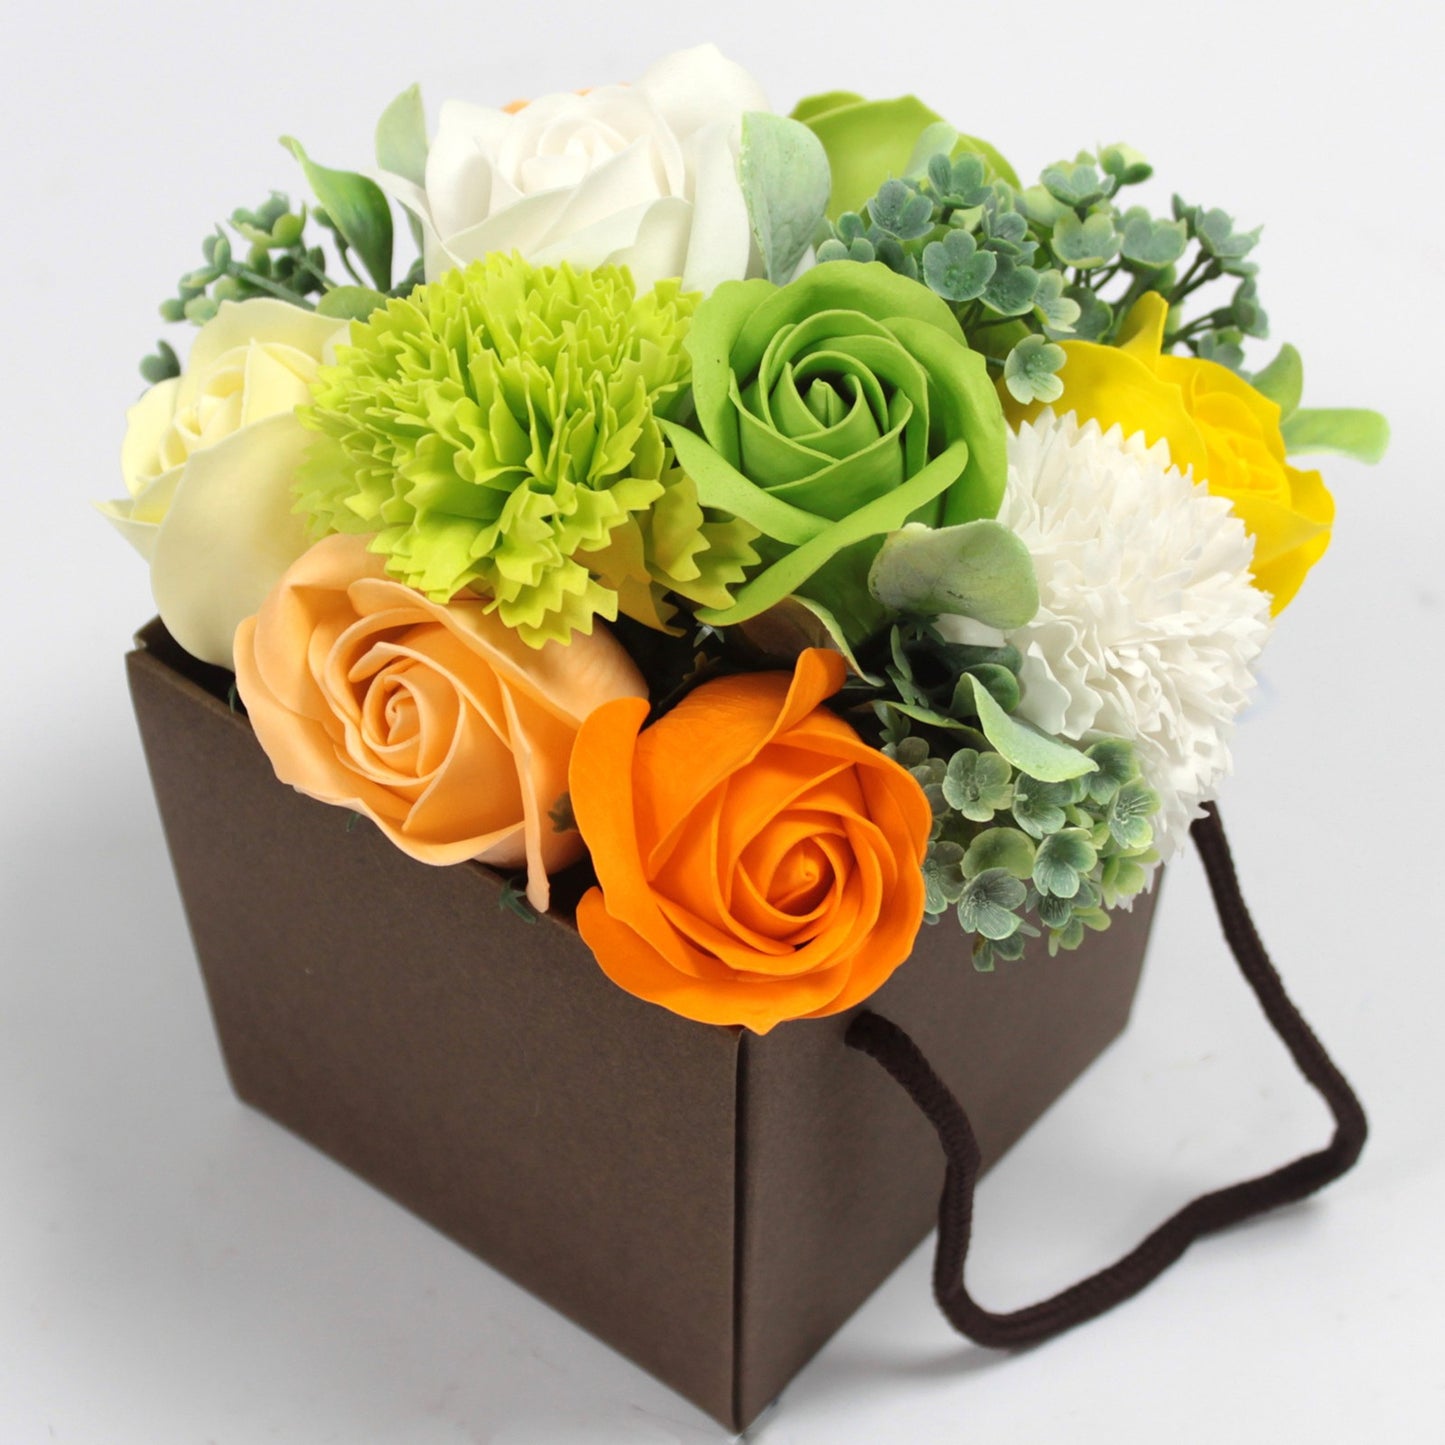 Luxury Soap Flower Bouquet - Spring Flowers